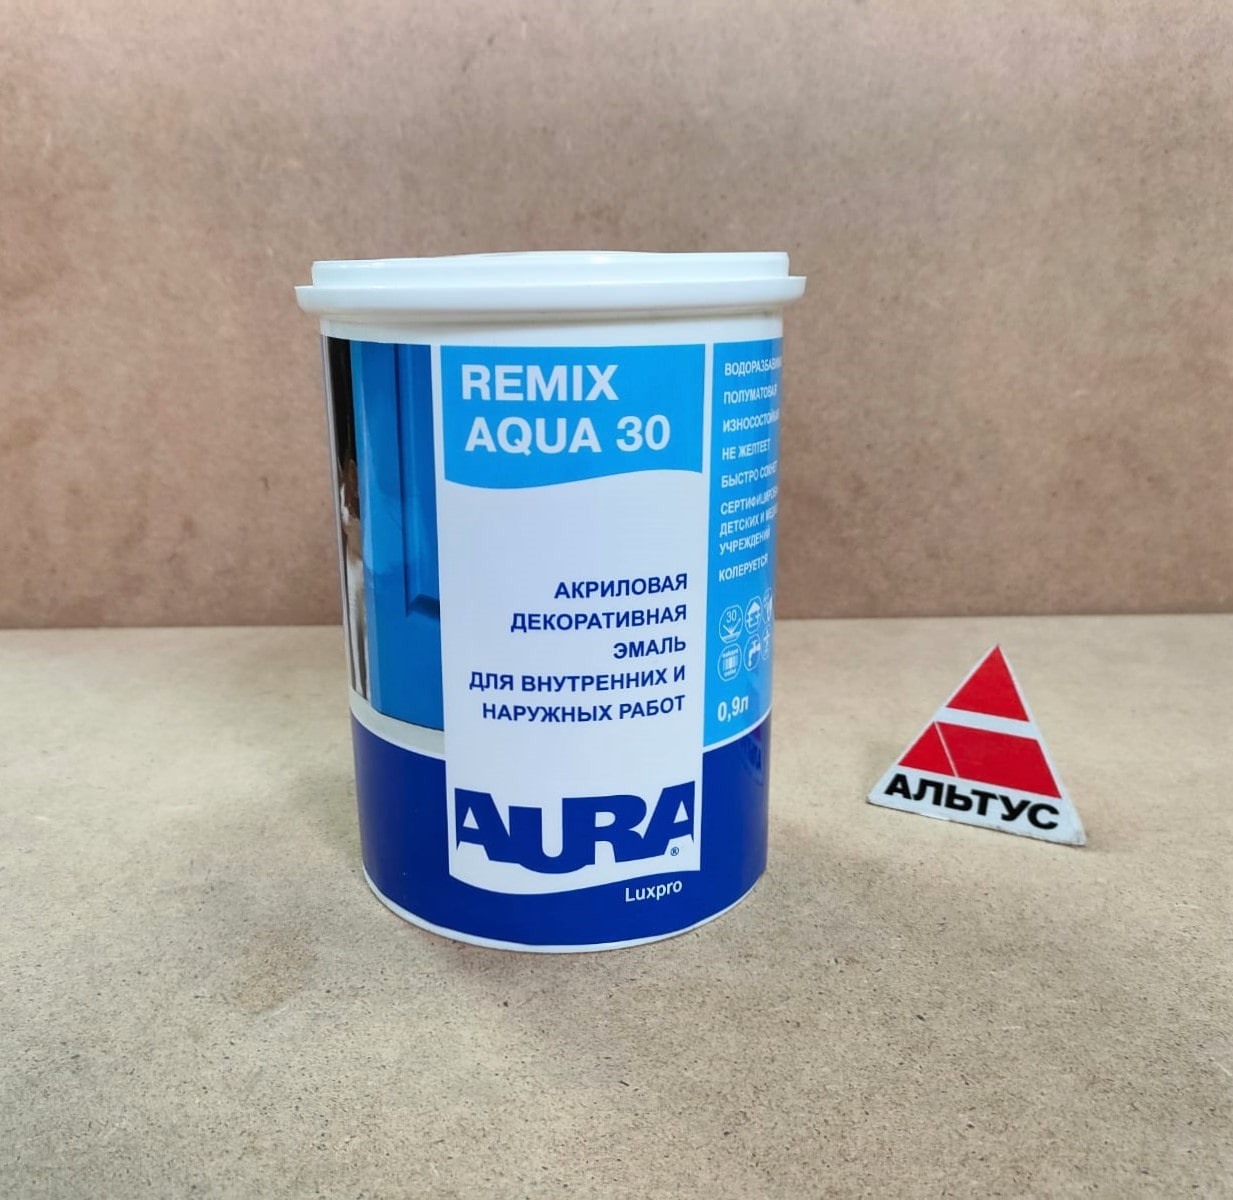 Акриловая декоративная эмаль AURA Luxpro Remix Aqua 30 0,9 л								